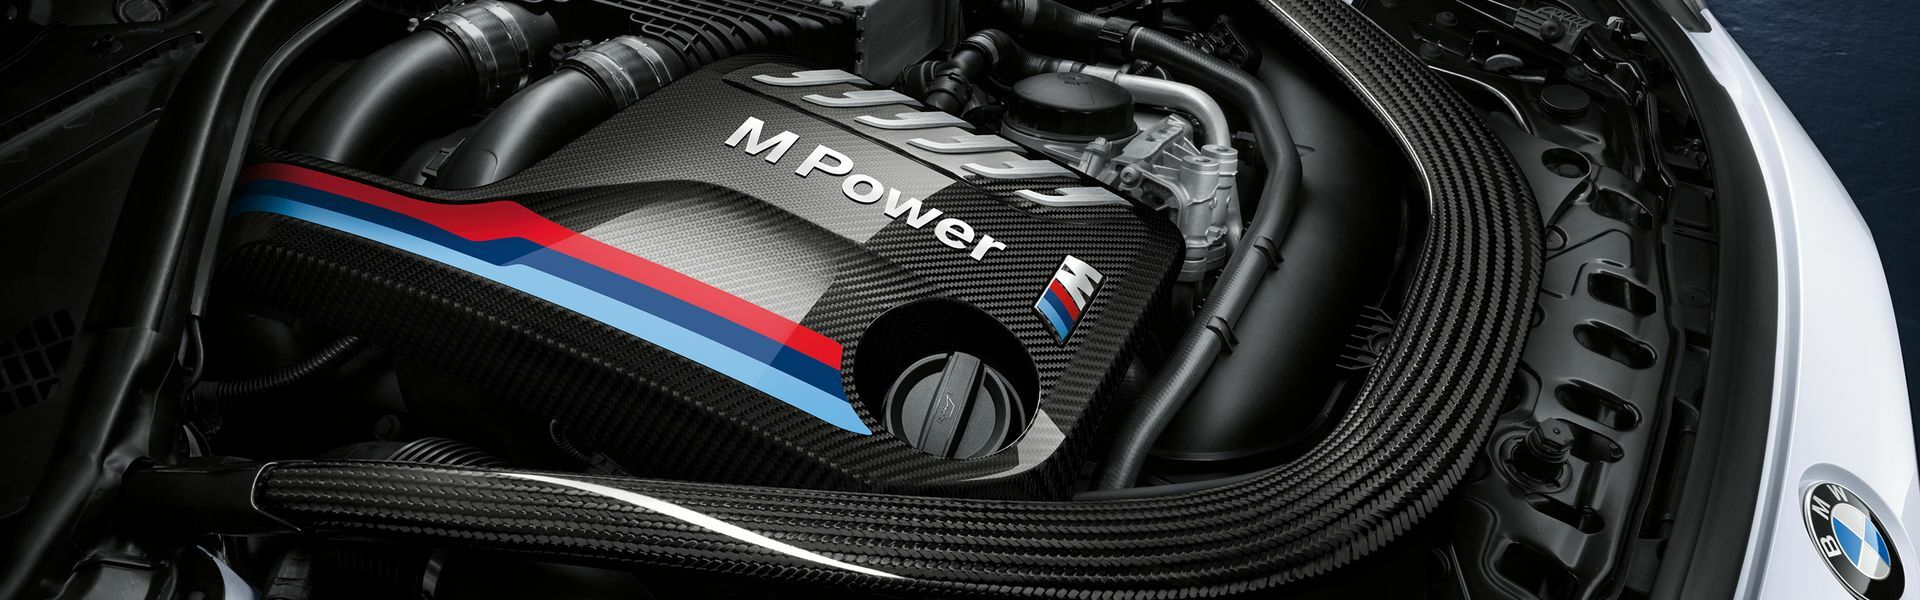 Zvýšení výkonu/ Softwarové úpravy/ Drobné performance díly pro automobil BMW M3 E30